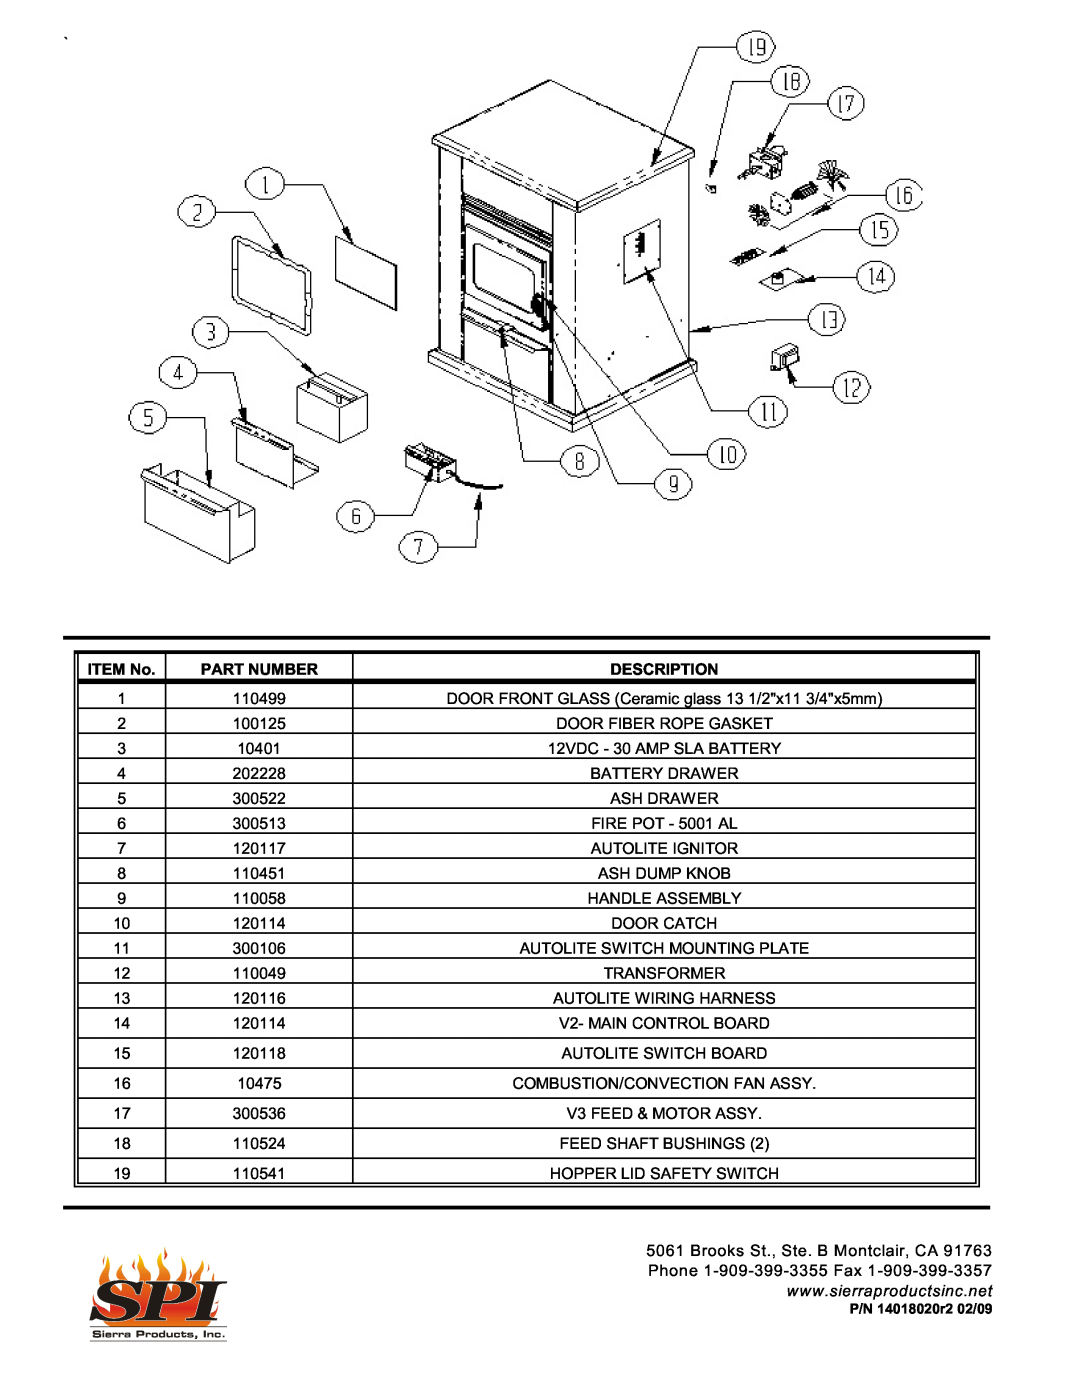 Sierra Products EF5001U owner manual ITEM No, Part Number, Description 